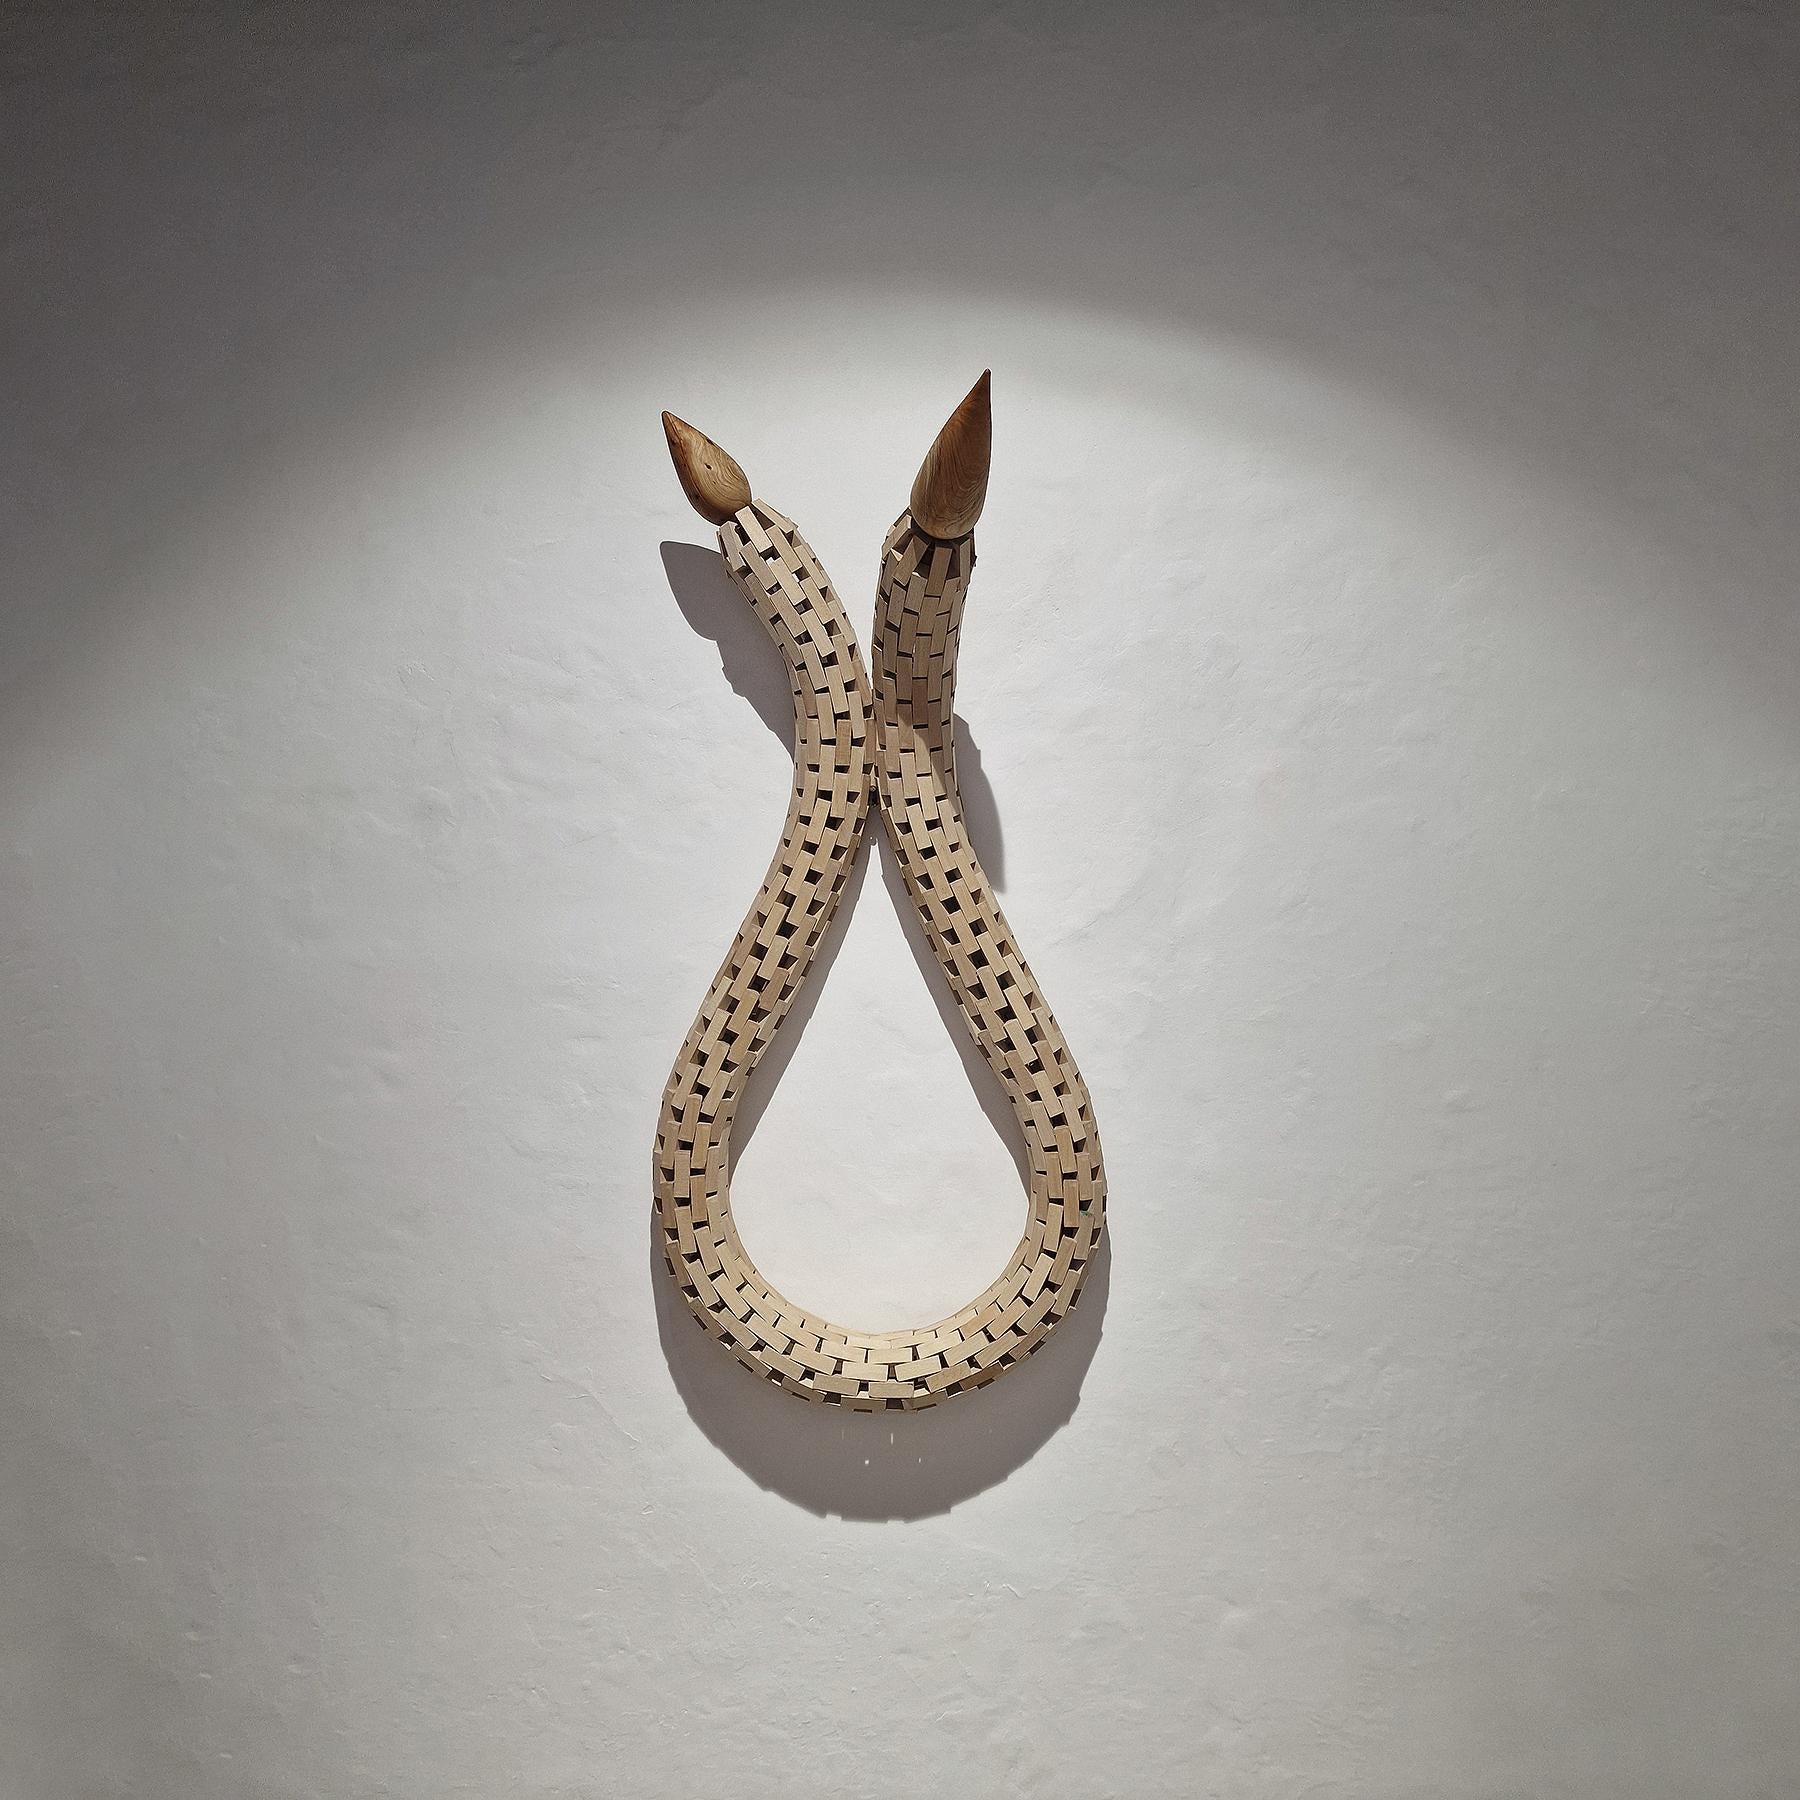 Abstract Sculpture Carlos Nicanor - Invertebrado